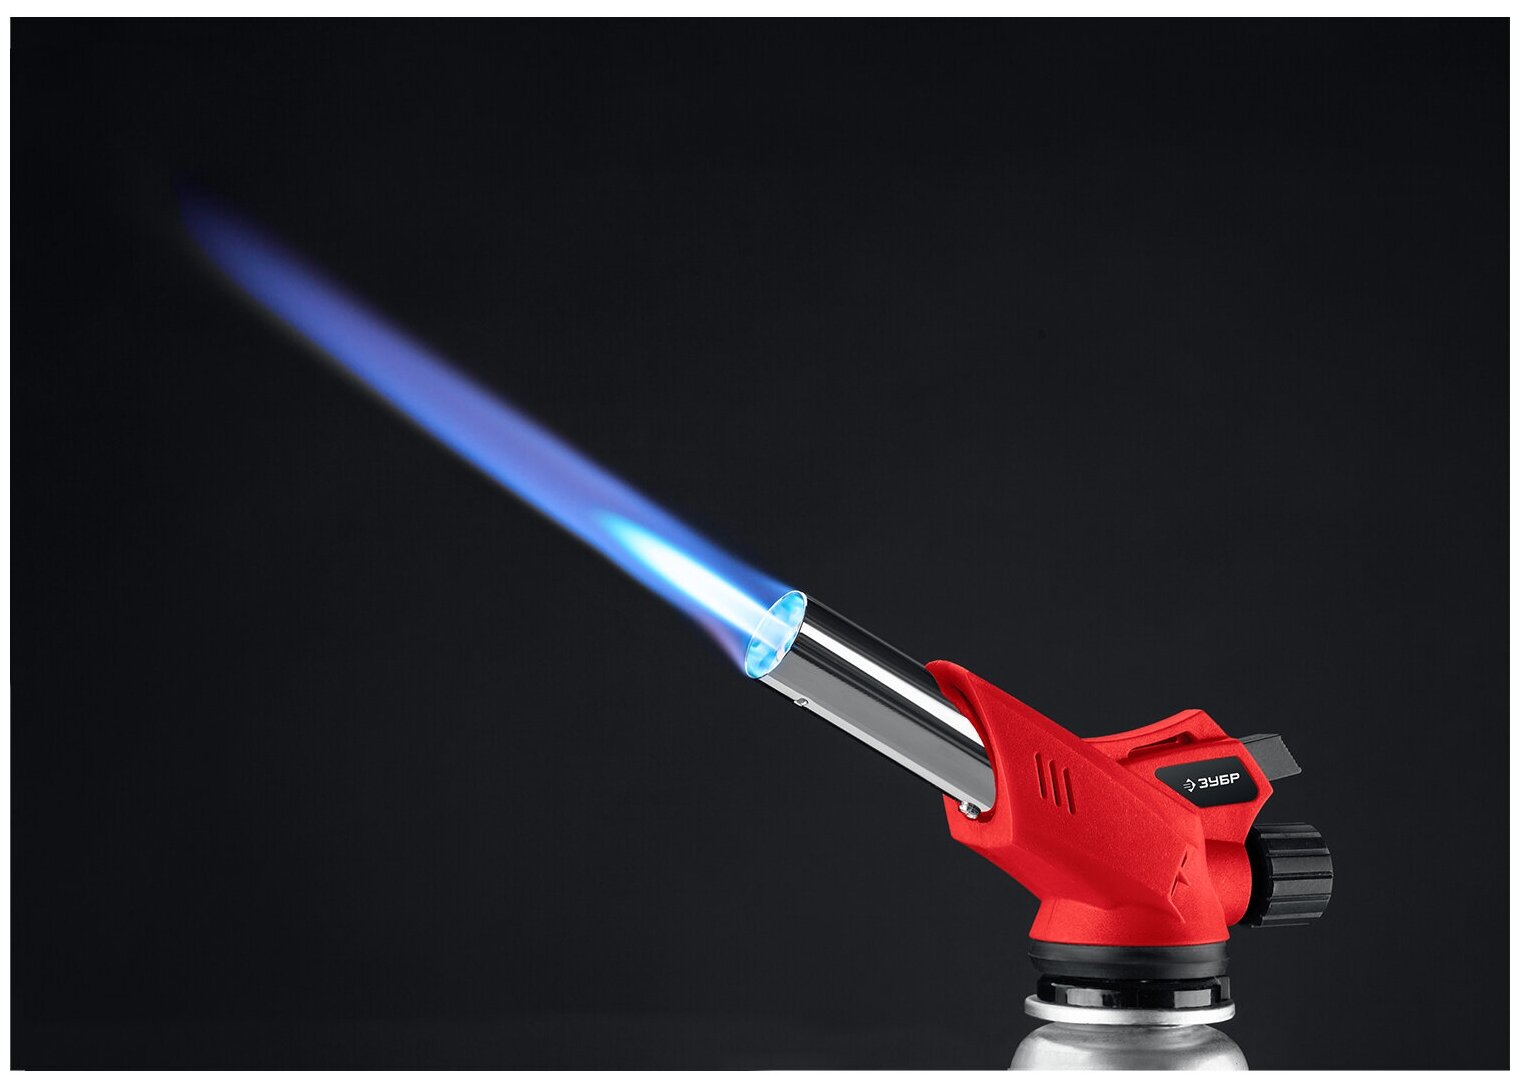 ЗУБР ГМ-350 газовая горелка с пъезоподжигом на баллон цанговое соединение 1300°C 55553